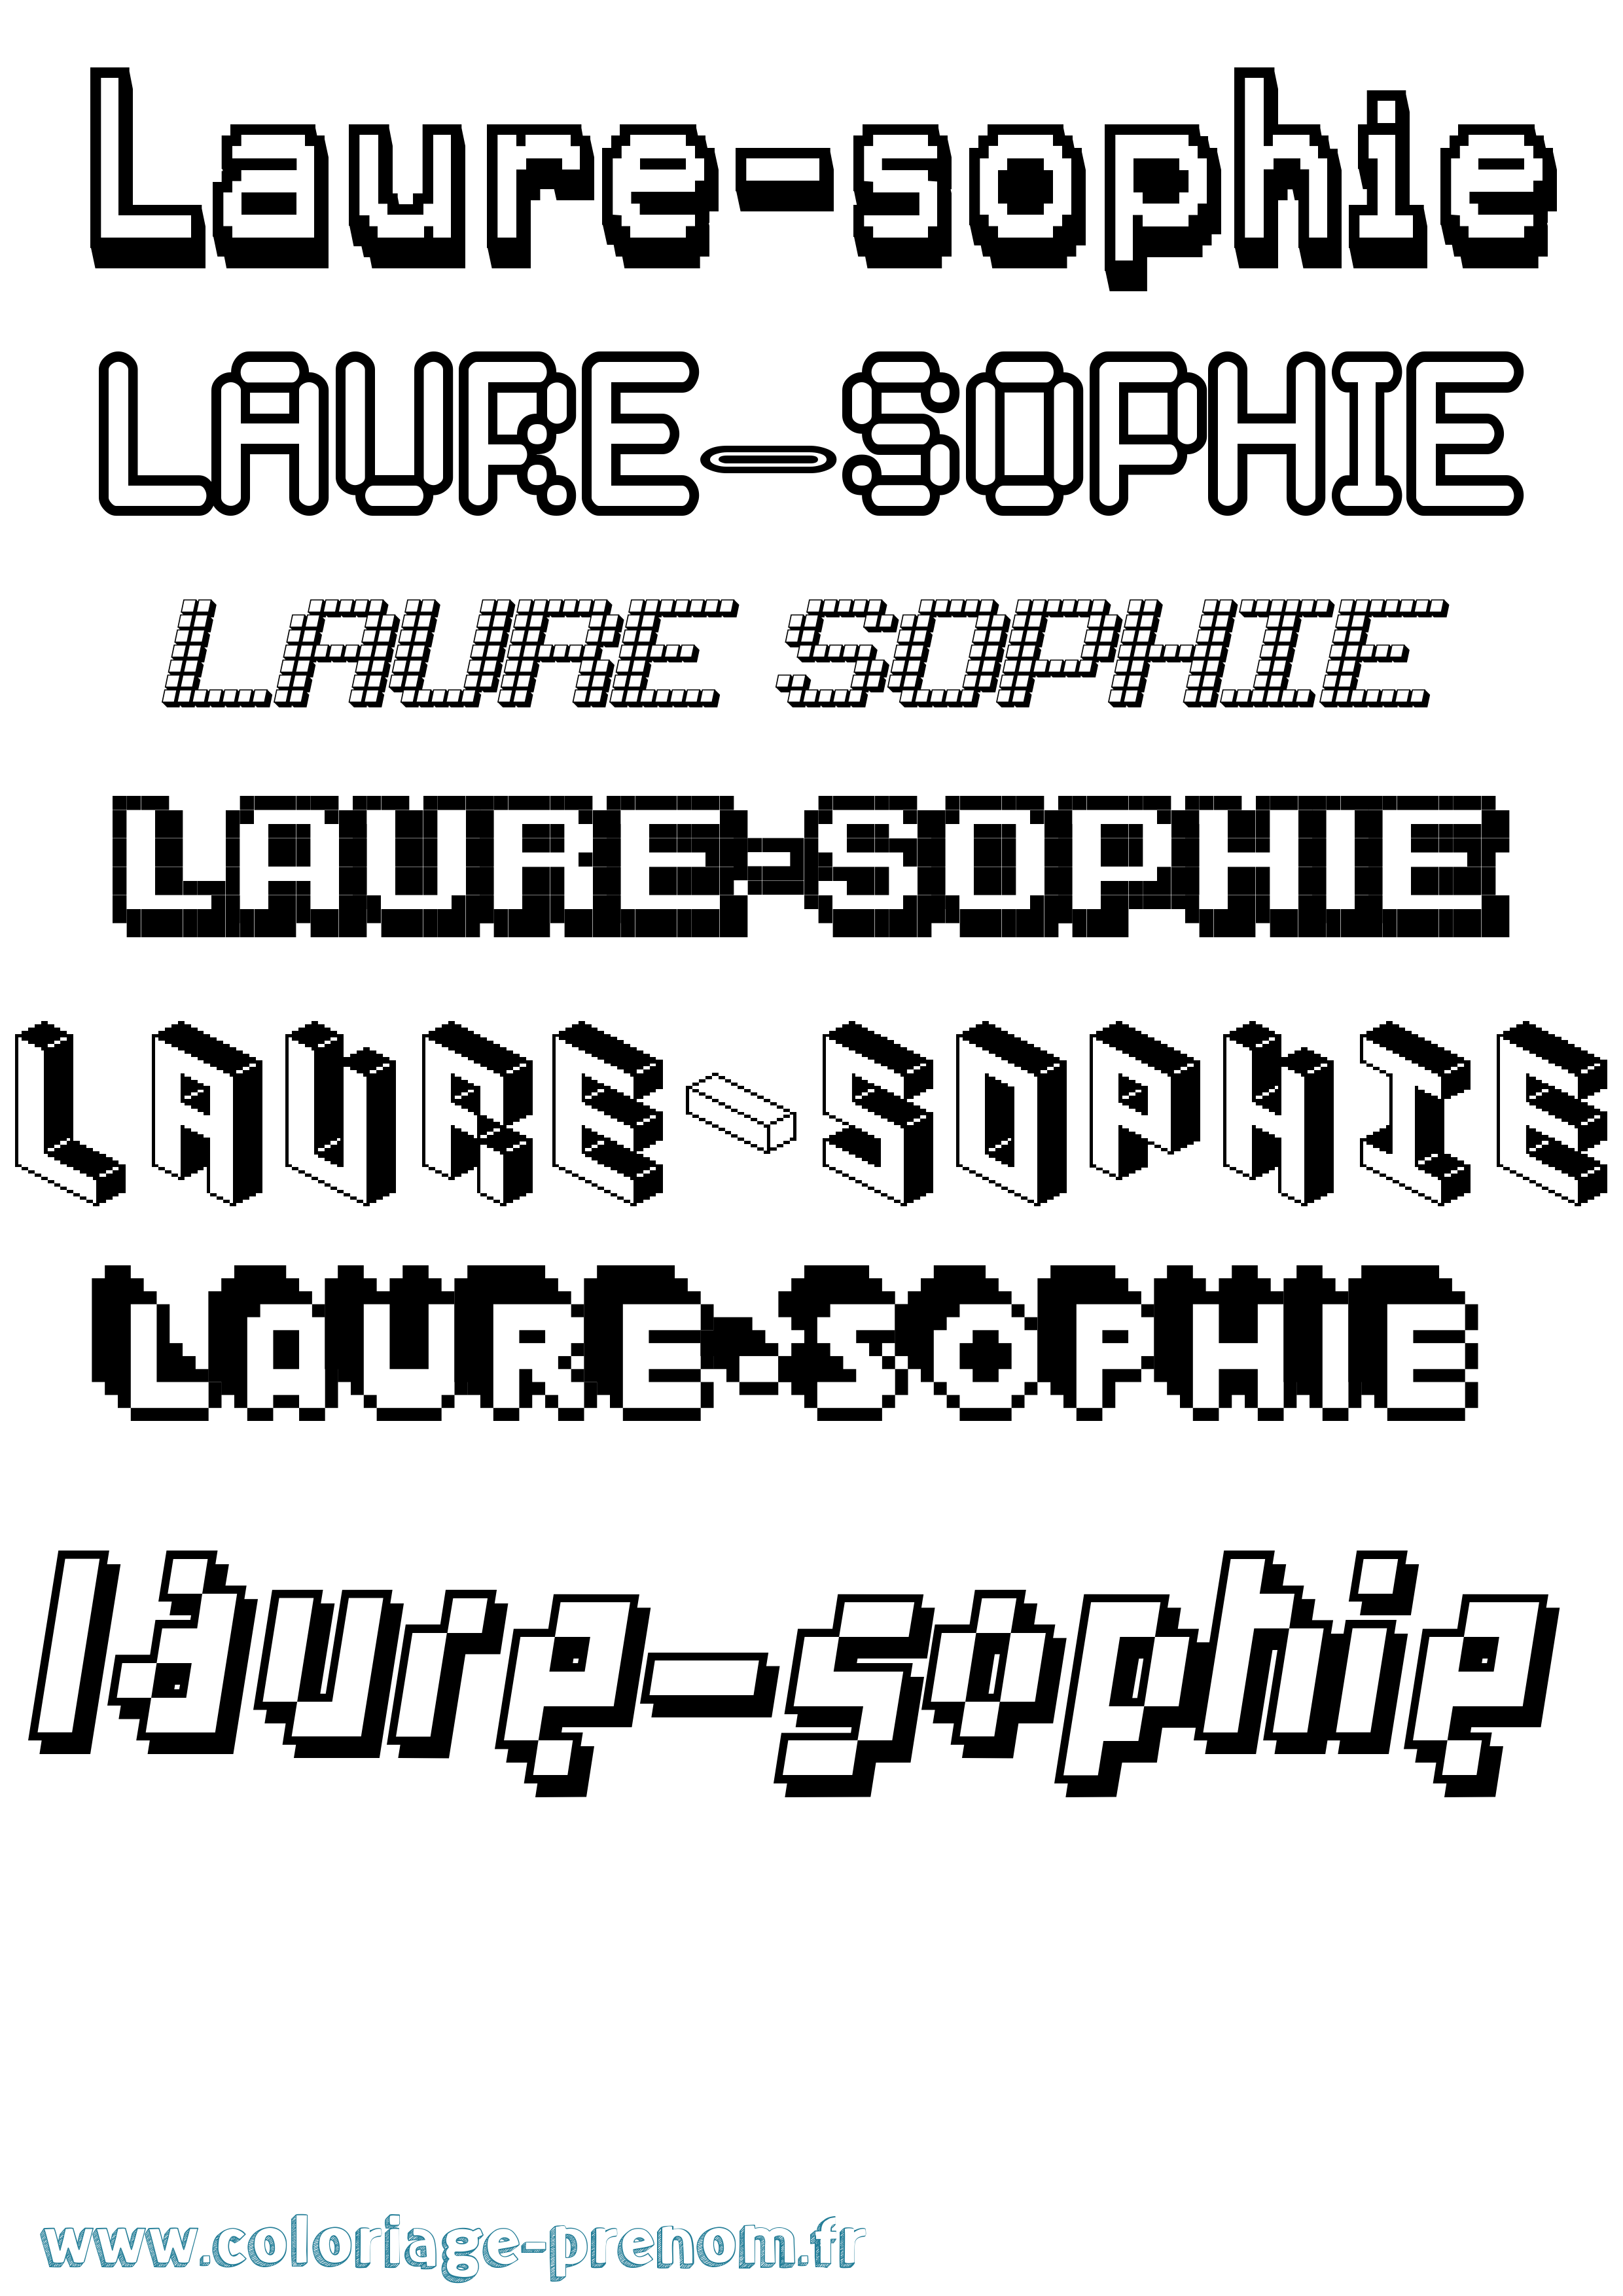 Coloriage prénom Laure-Sophie Pixel